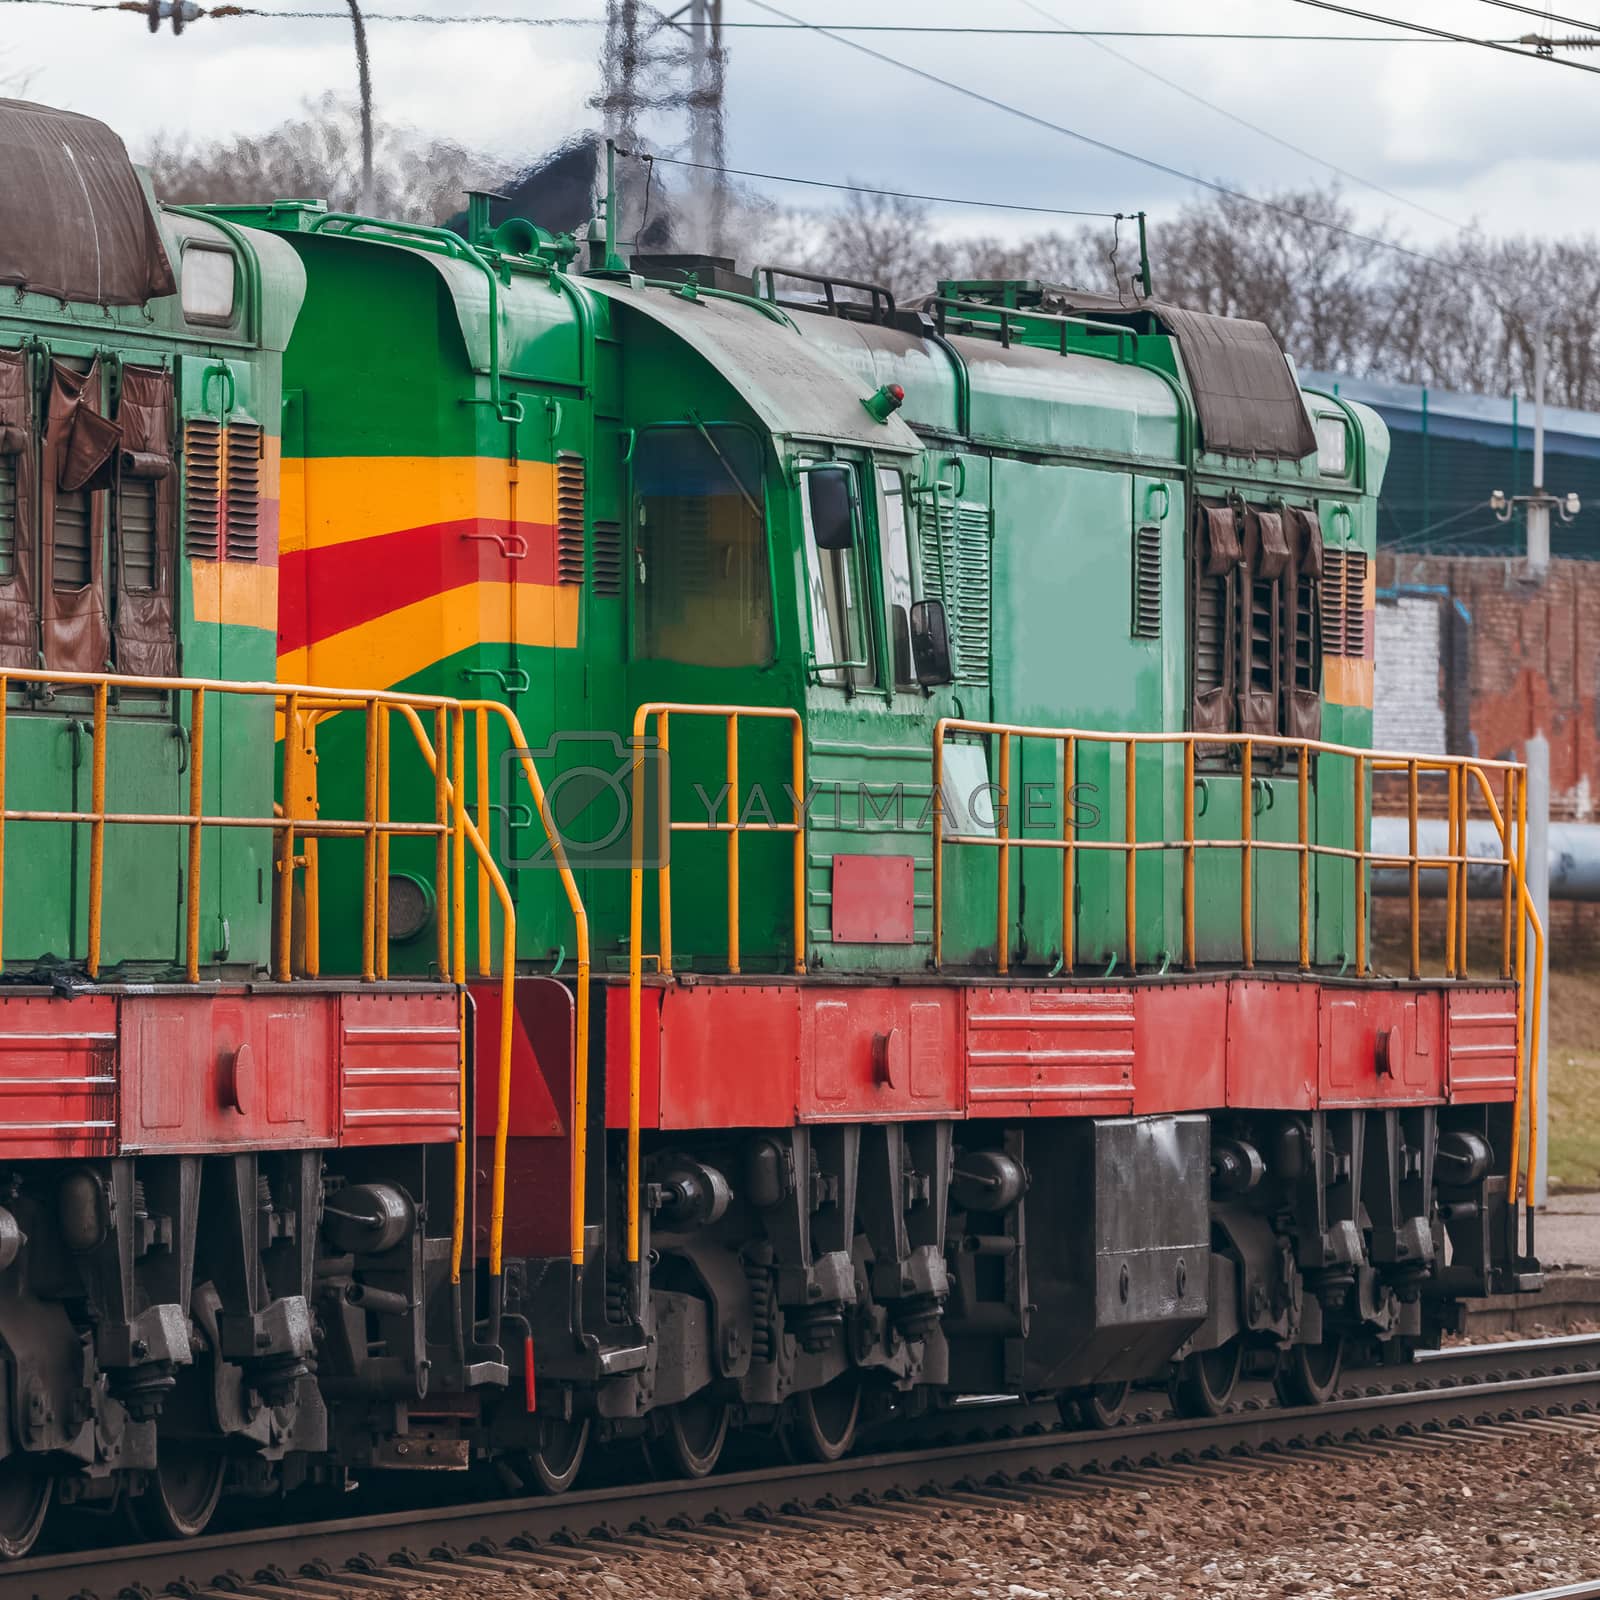 Royalty free image of Green diesel locomotive by sengnsp